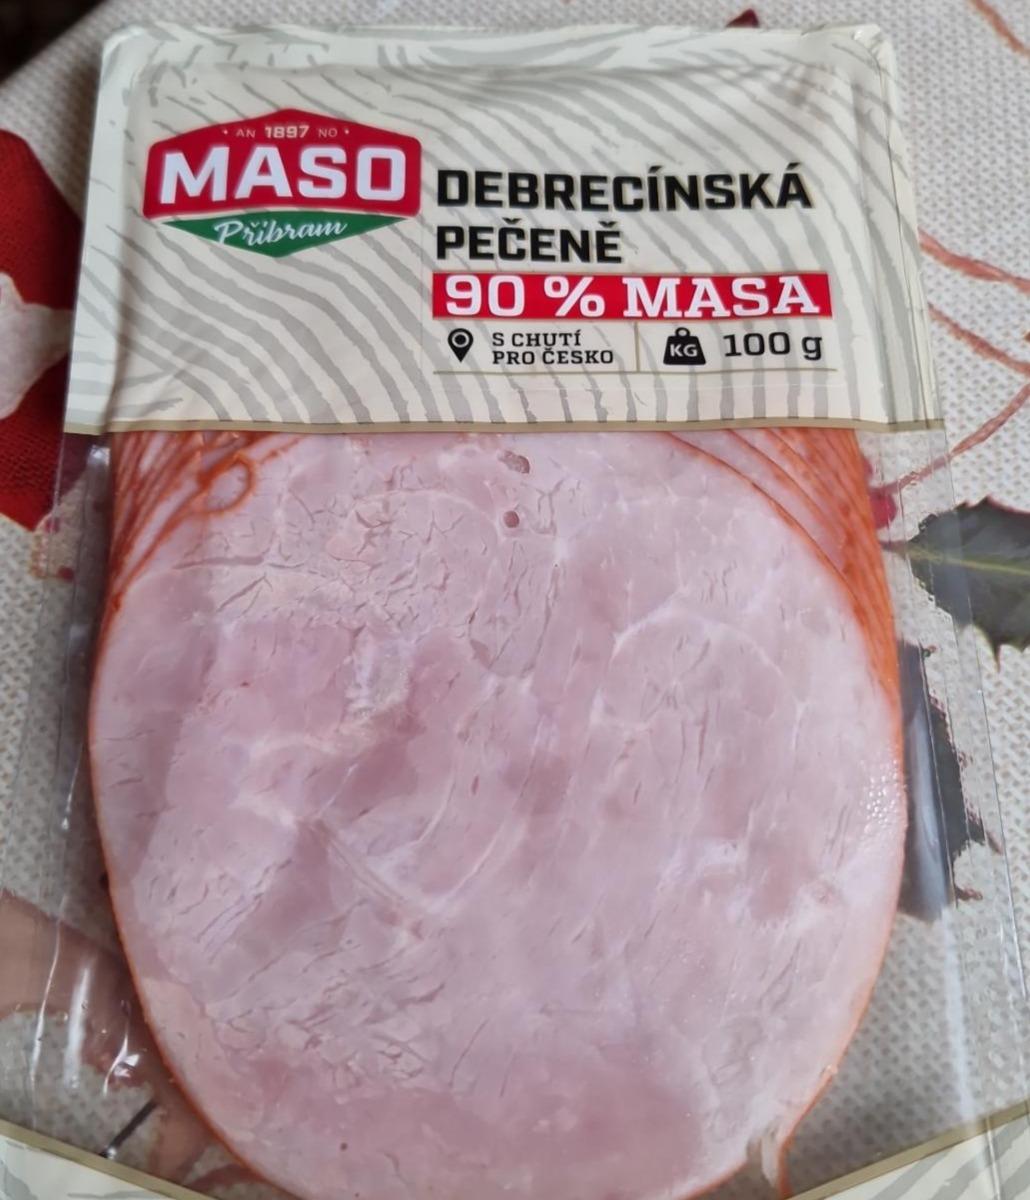 Фото - Dedrecínská pečeně 90% masa Maso Příbram